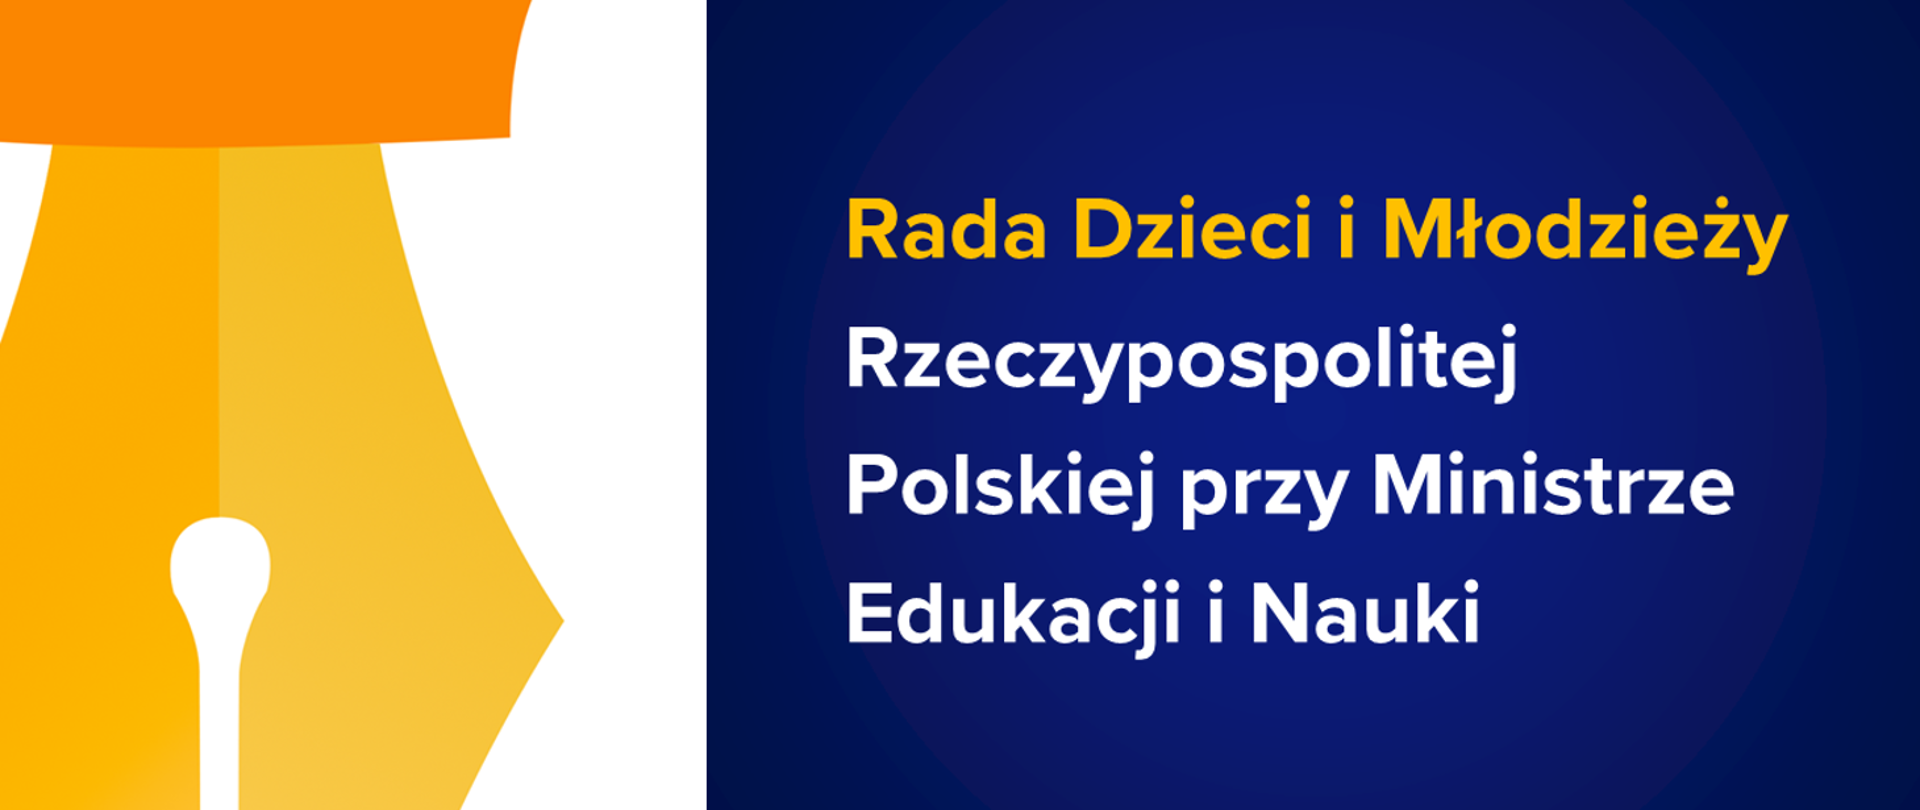 Rada Dzieci i Młodzieży Rzeczypospolitej Polskiej przy Ministrze Edukacji i Nauki